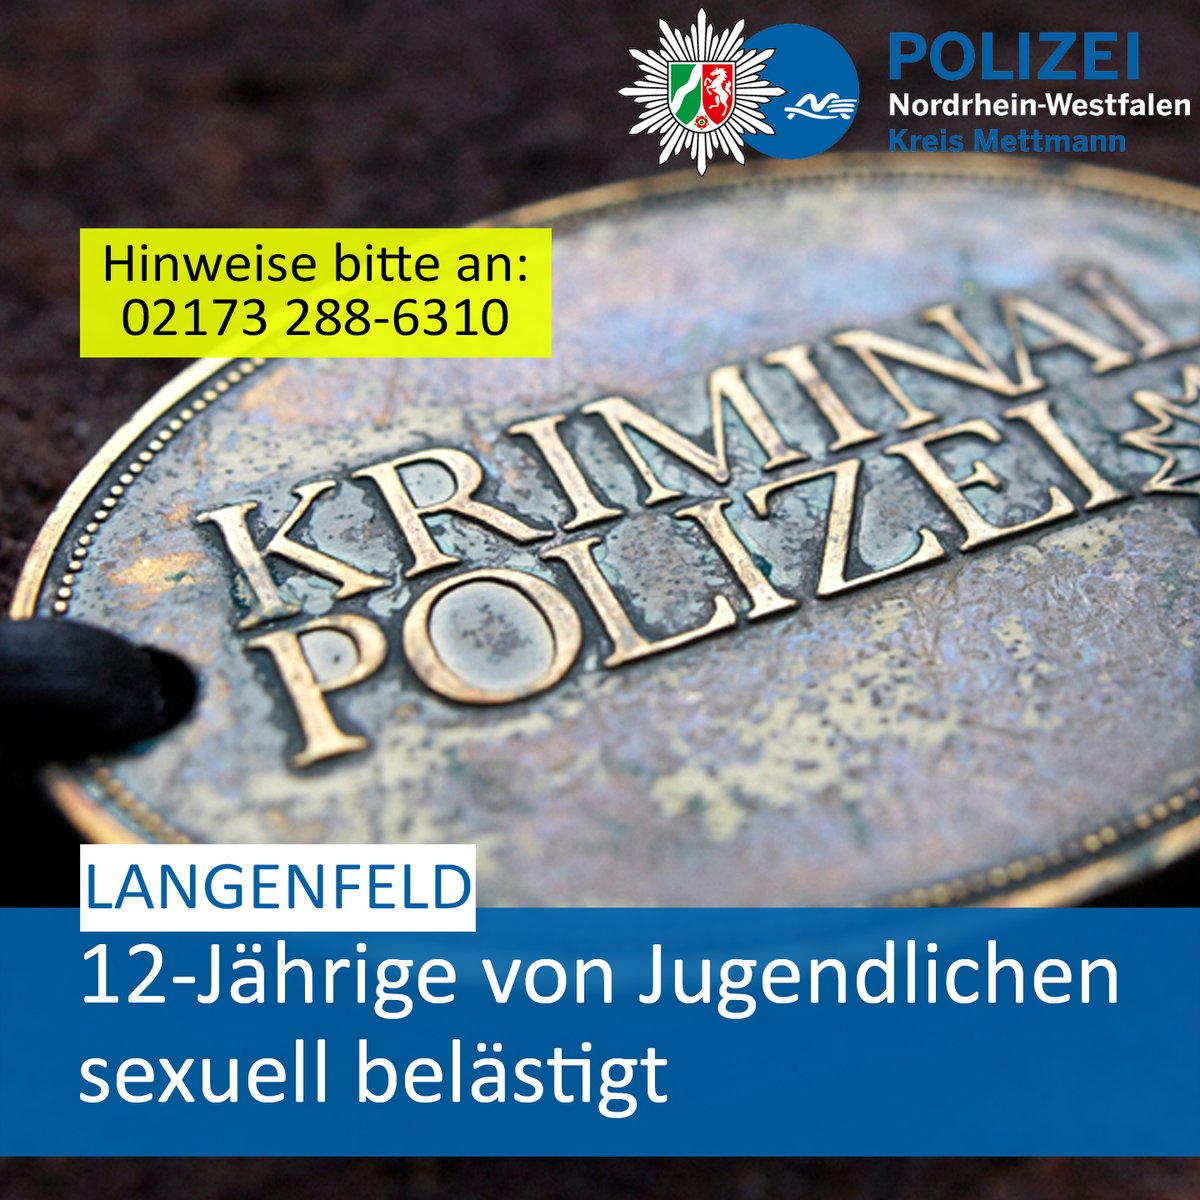 #Langenfeld: 12-Jährige sexuell belästigt – Polizei bittet um Hinweise. 👉️ Hier geht es zur ausführlichen 📝 Pressemitteilung samt Täterbeschreibung: presseportal.de/blaulicht/pm/4…  Ihre #PolizeiME👮